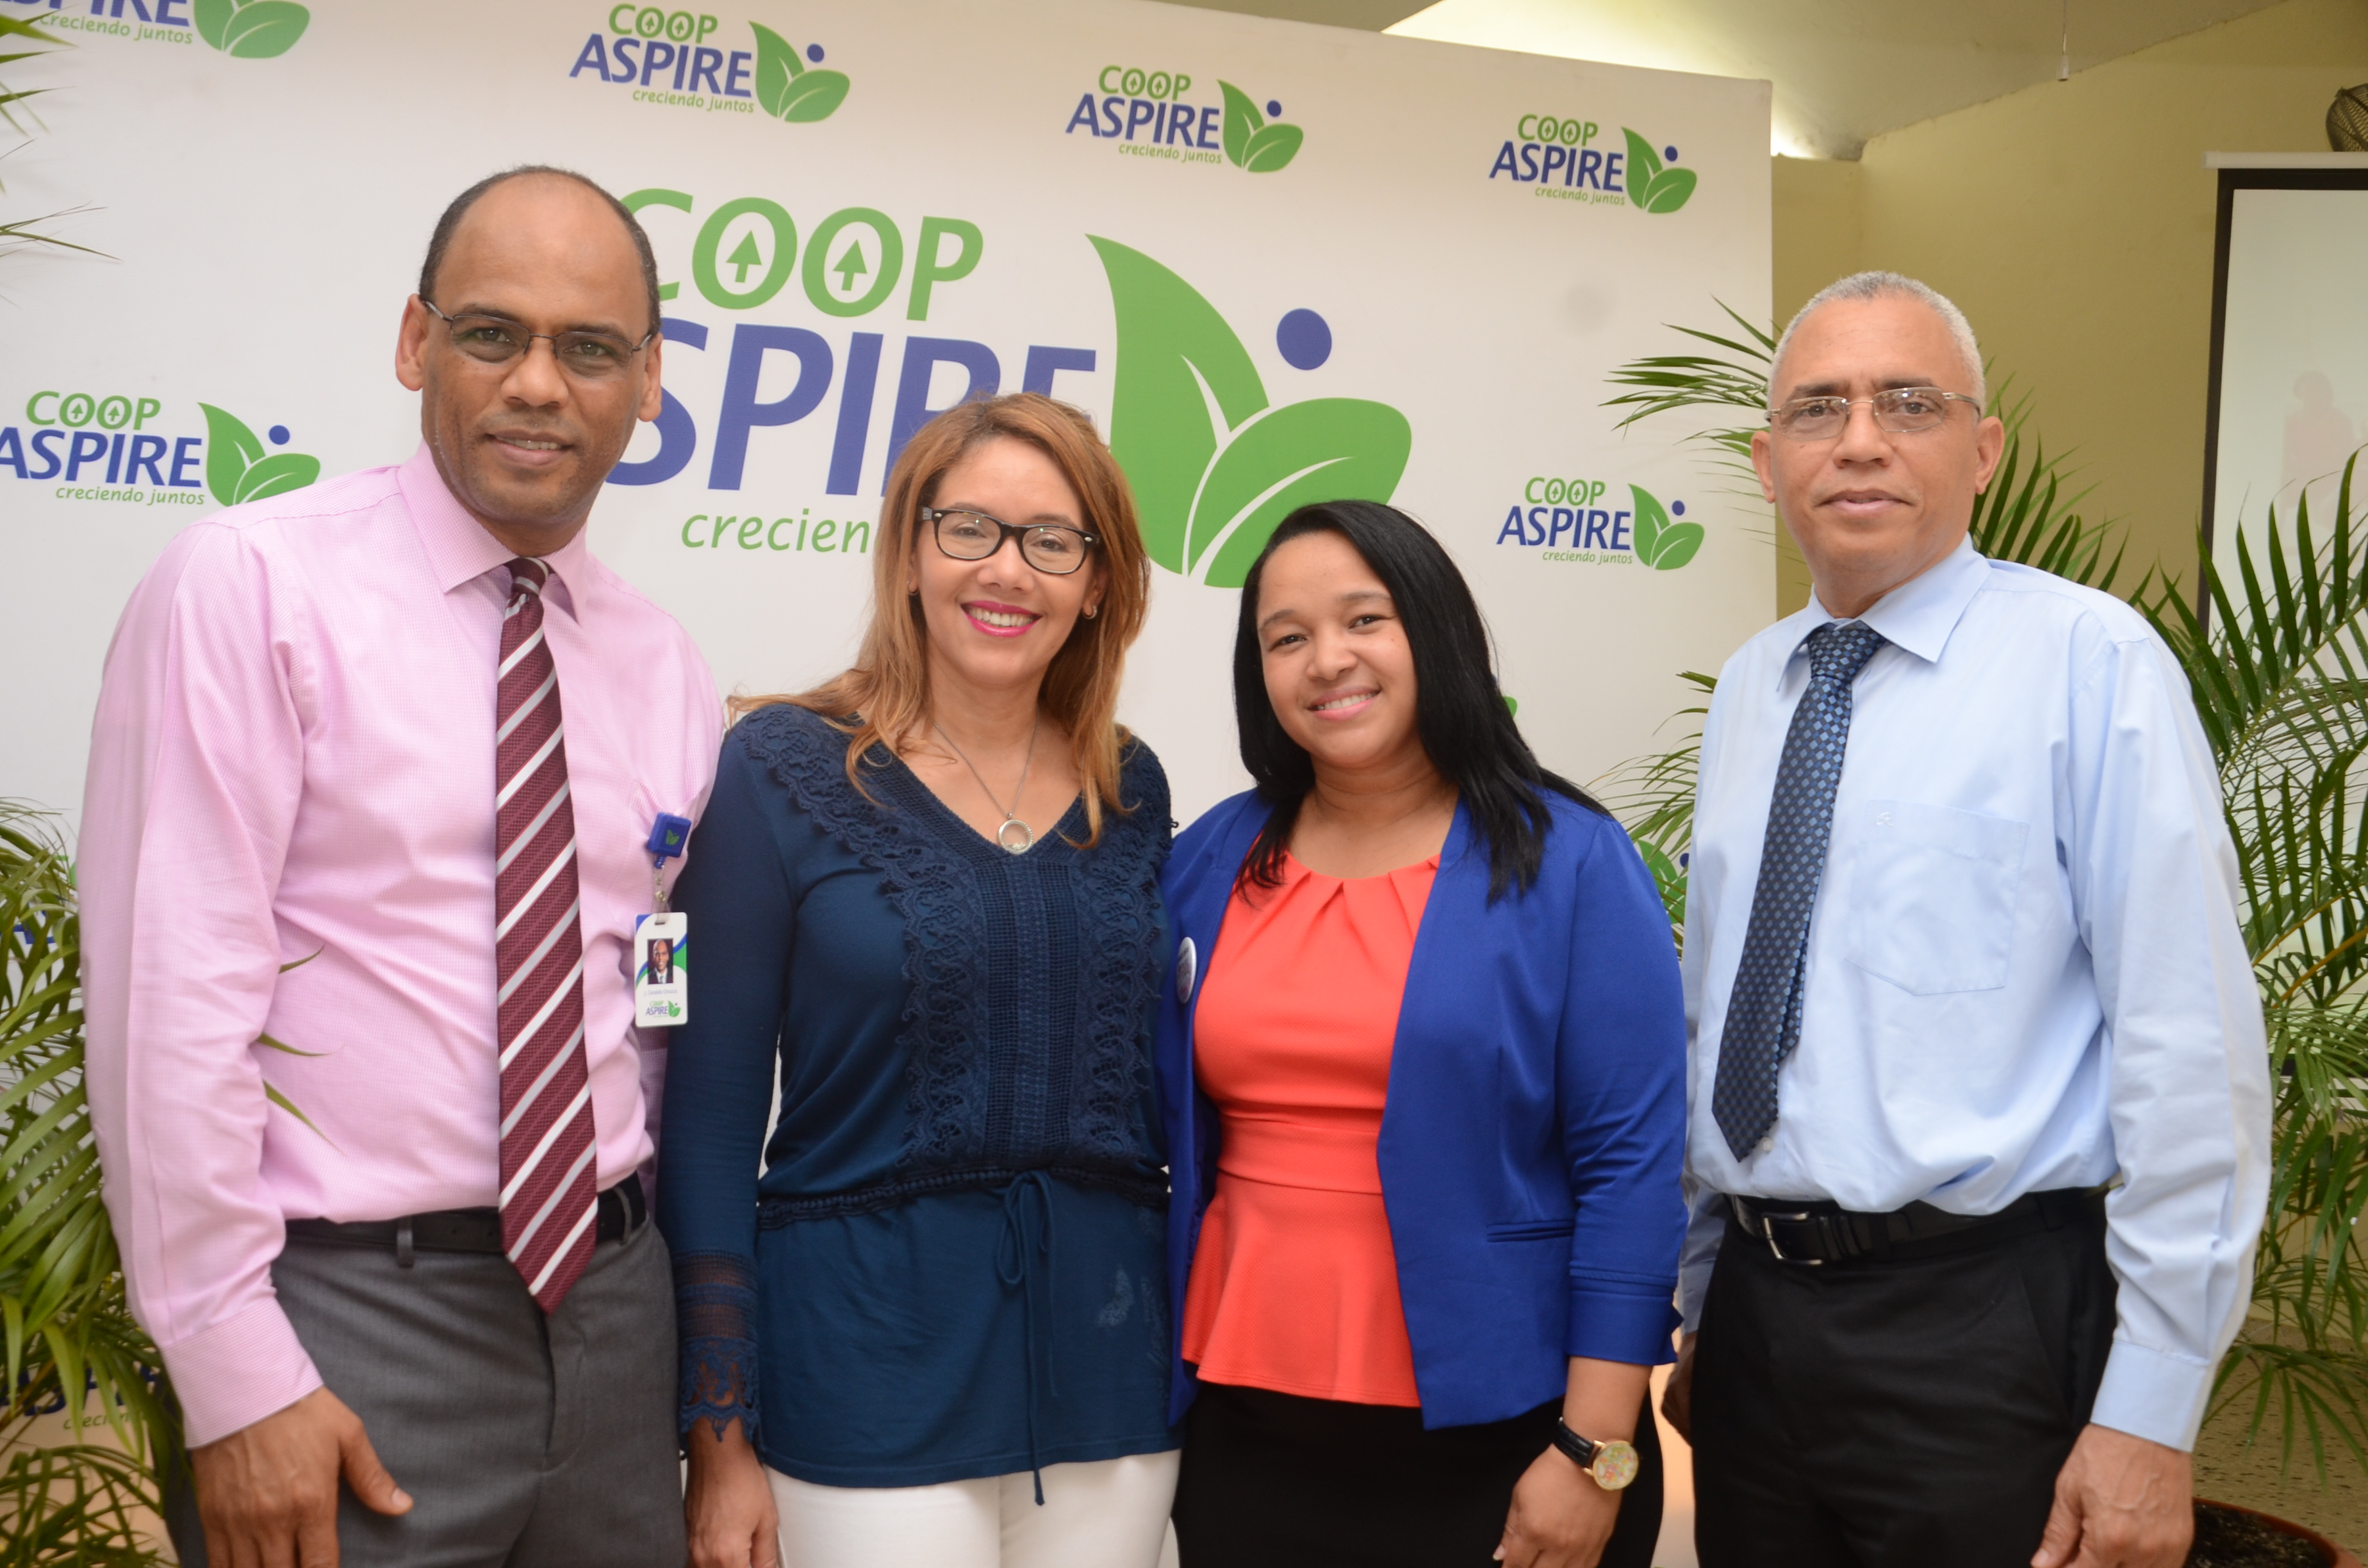  Coop Aspire realiza Encuentro con Mujeres Emprendedoras del programa “Aspirando Juntas”